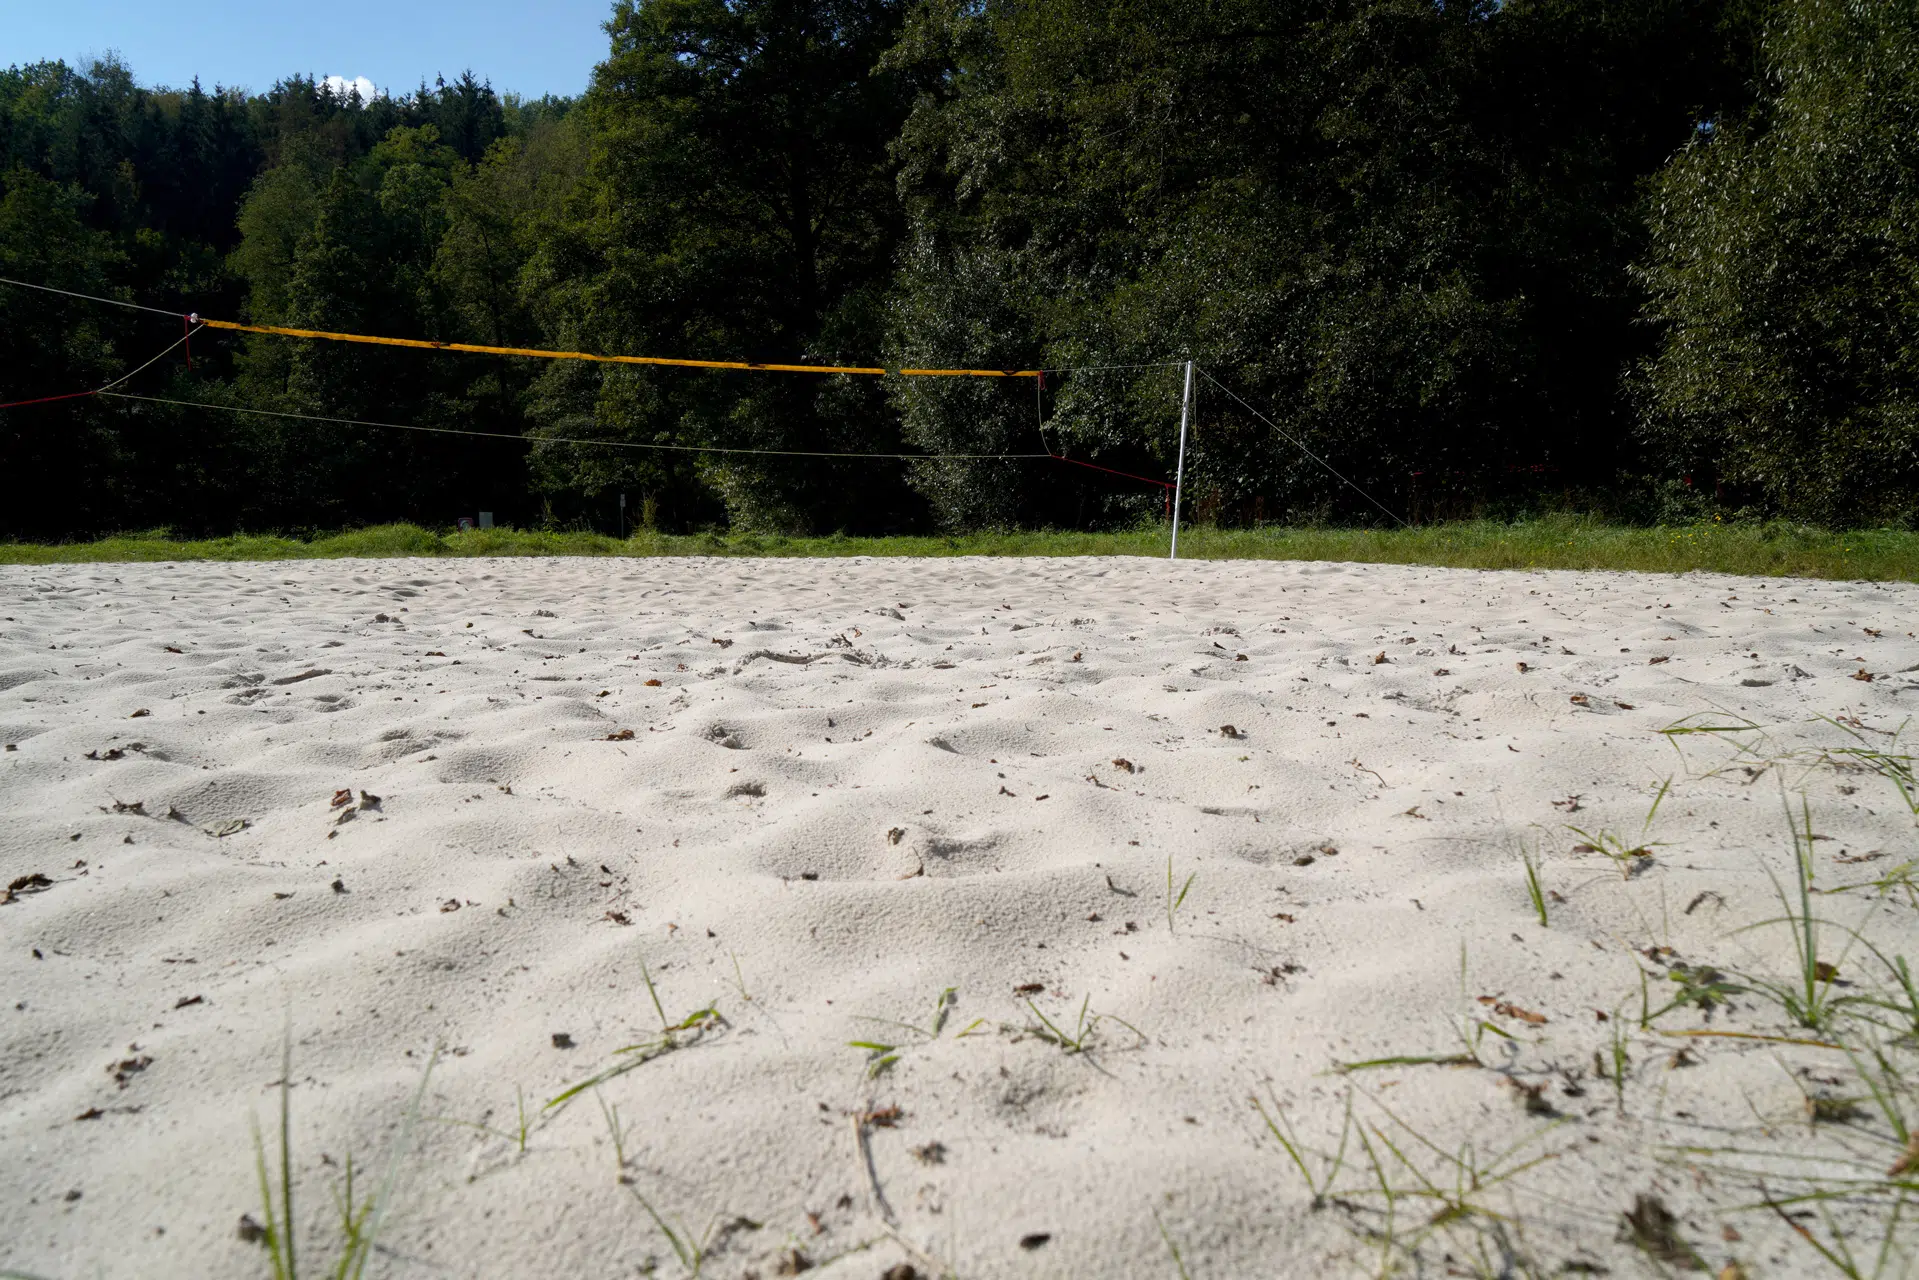 Terrain de volleyball sur sable près d'une forêt